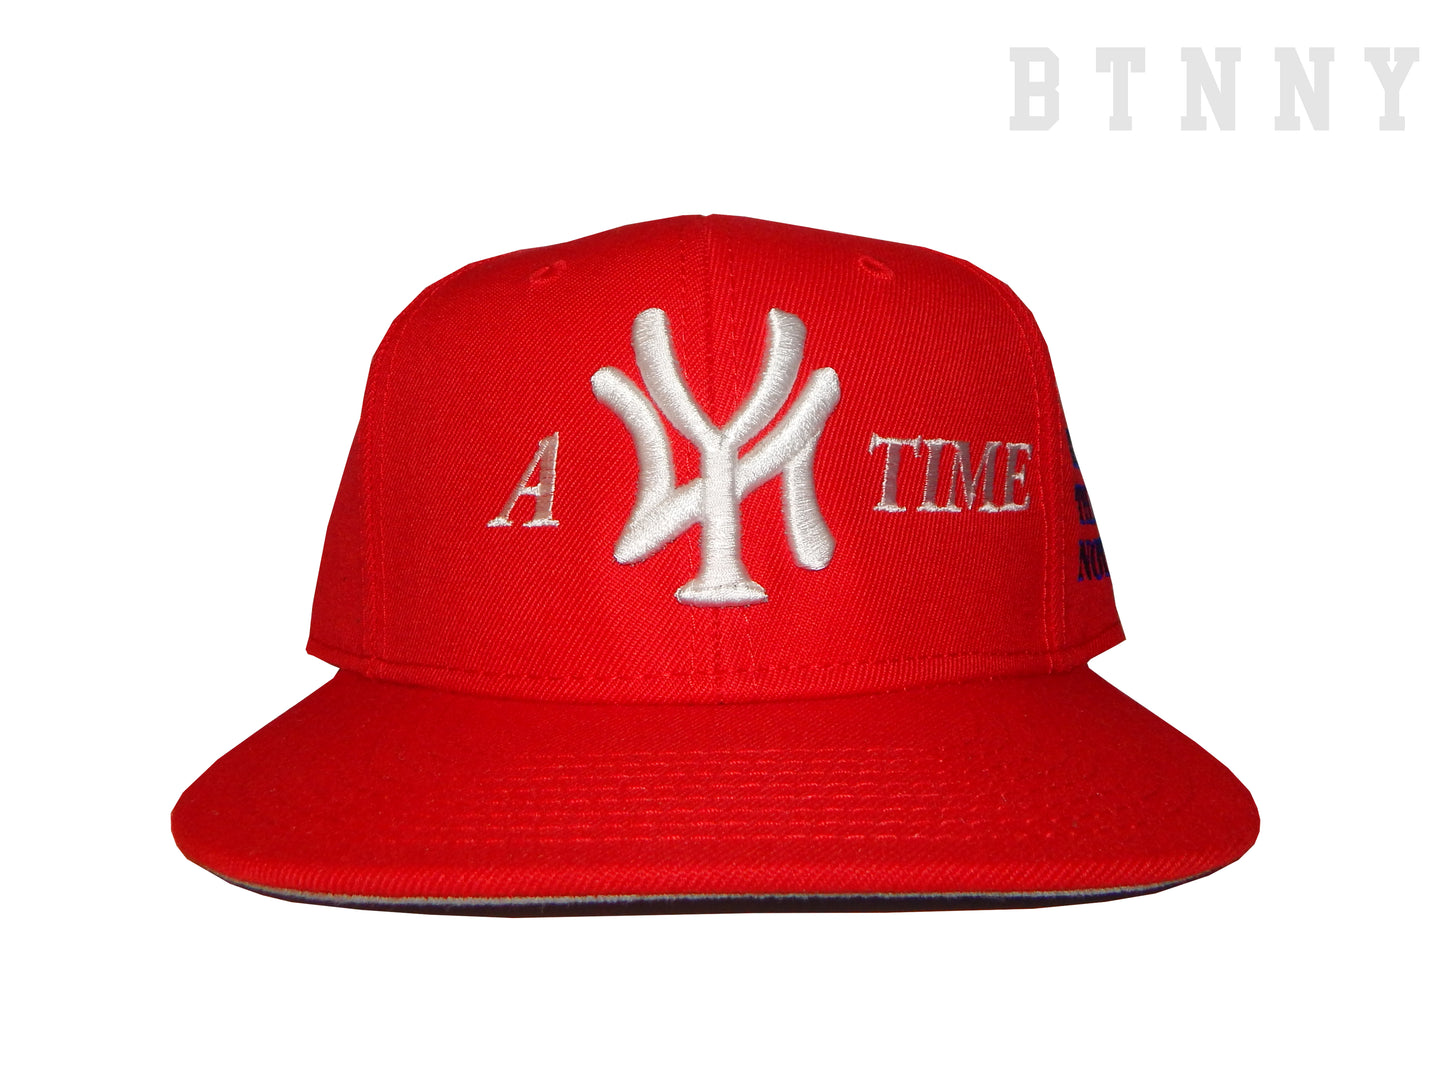 A NY TIME BASEBALL CAP